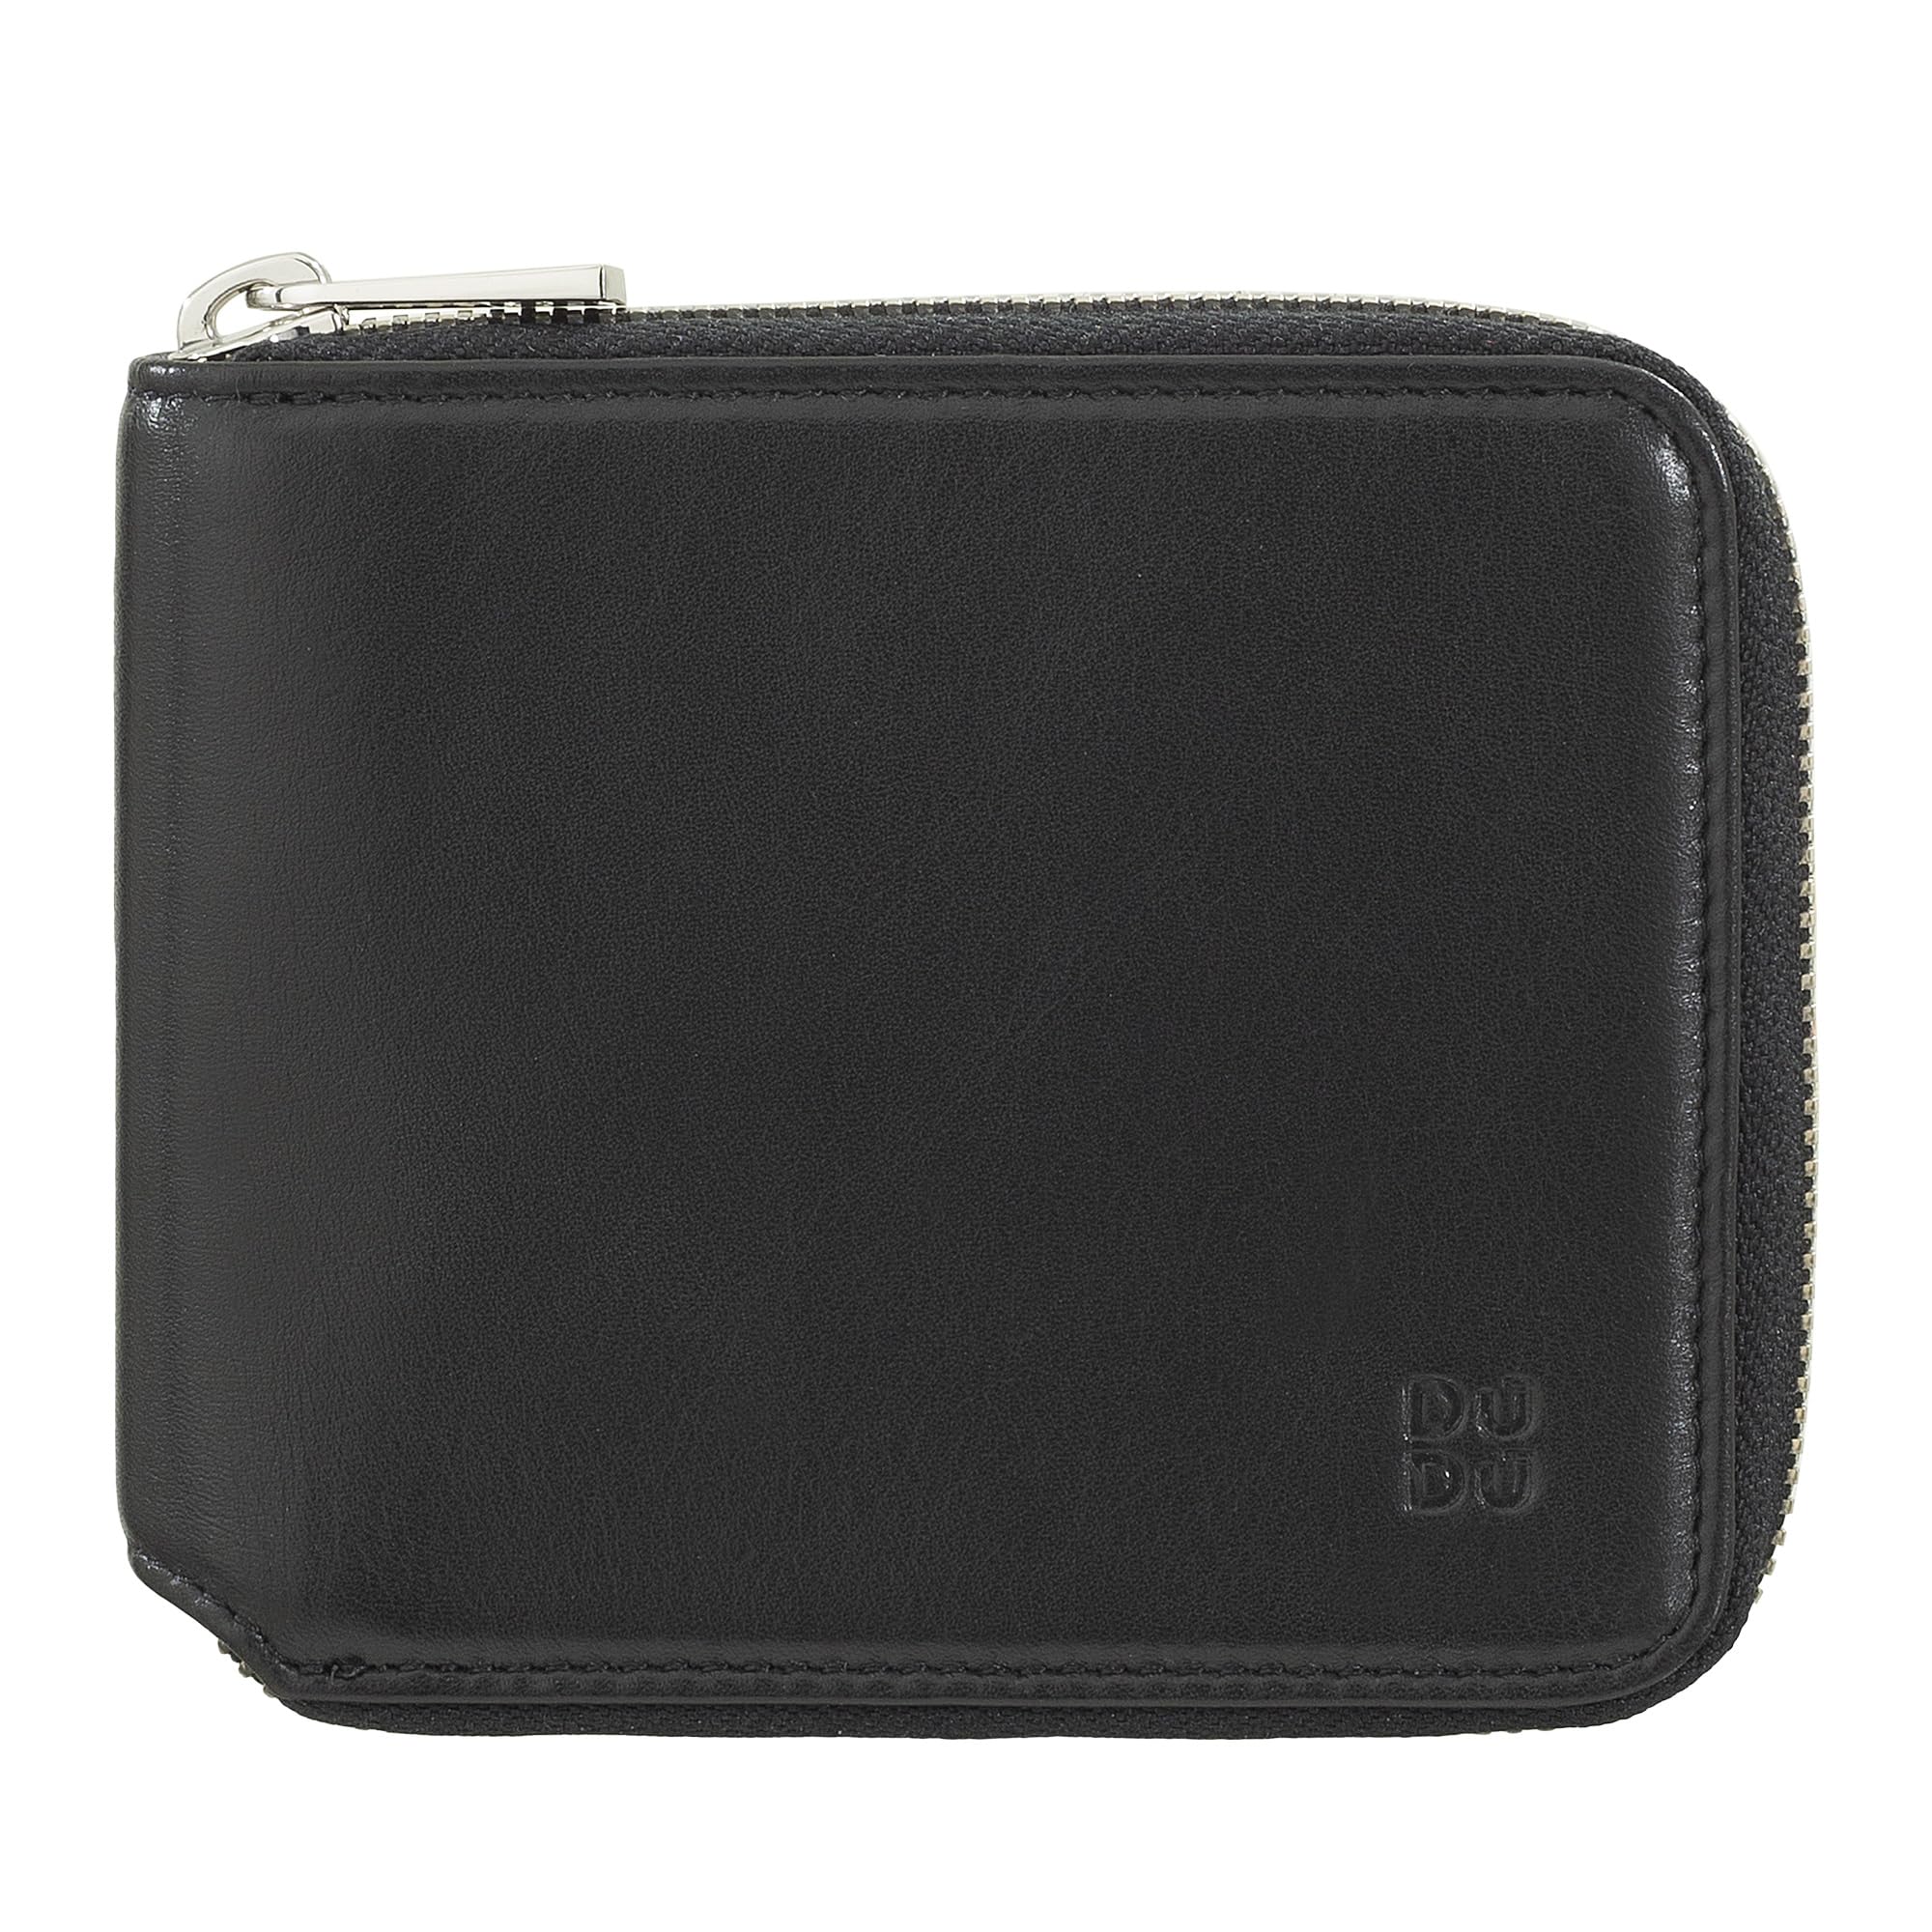 DUDU Herren-Brieftasche RFID, aus weichem Leder mit kleinem außenliegendem Reißverschluss und 6 Kreditkartenfächern. Schwarz